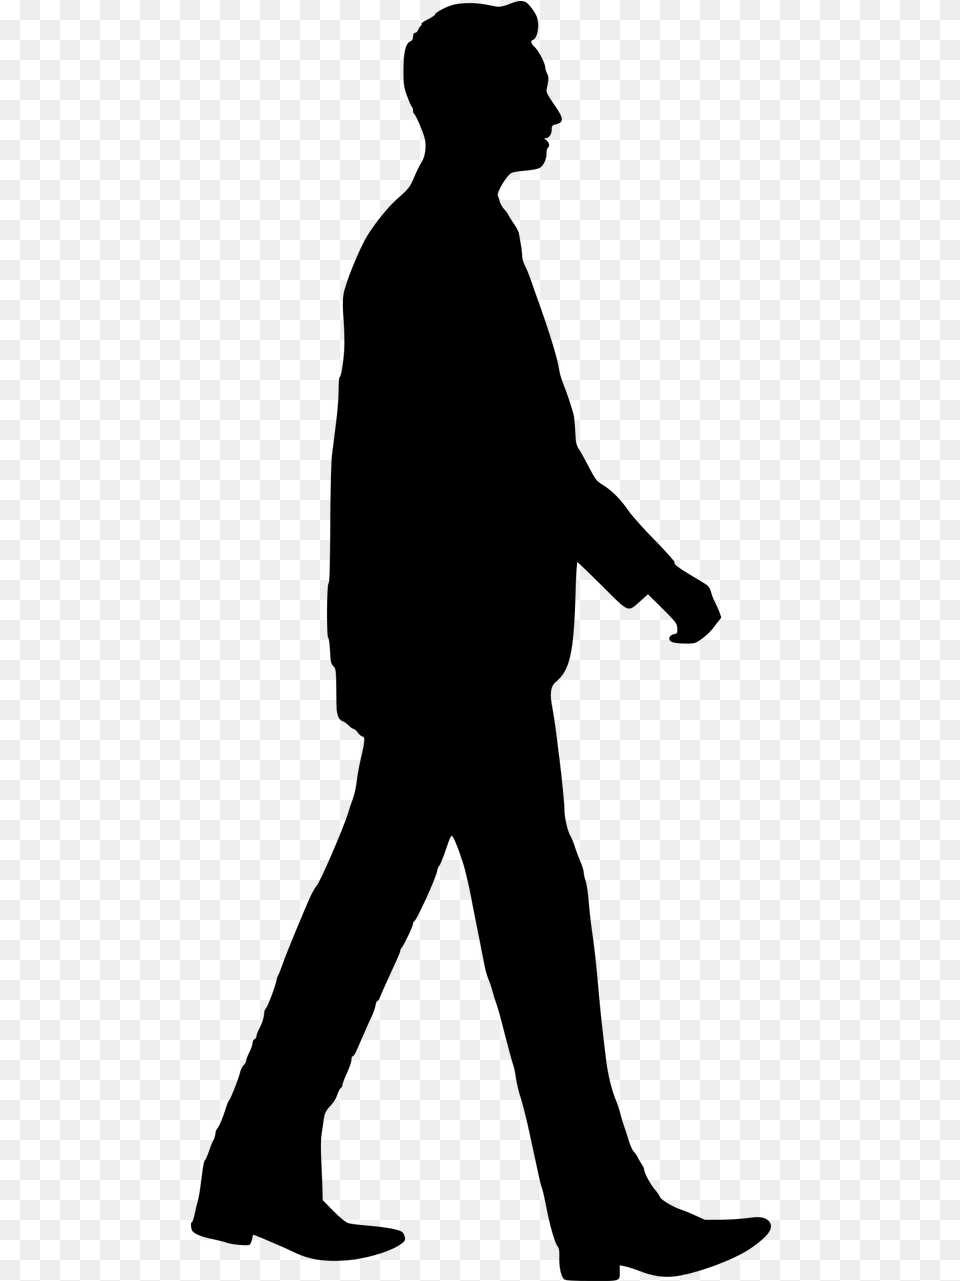 Walking Man Silhouette, Gray Free Png